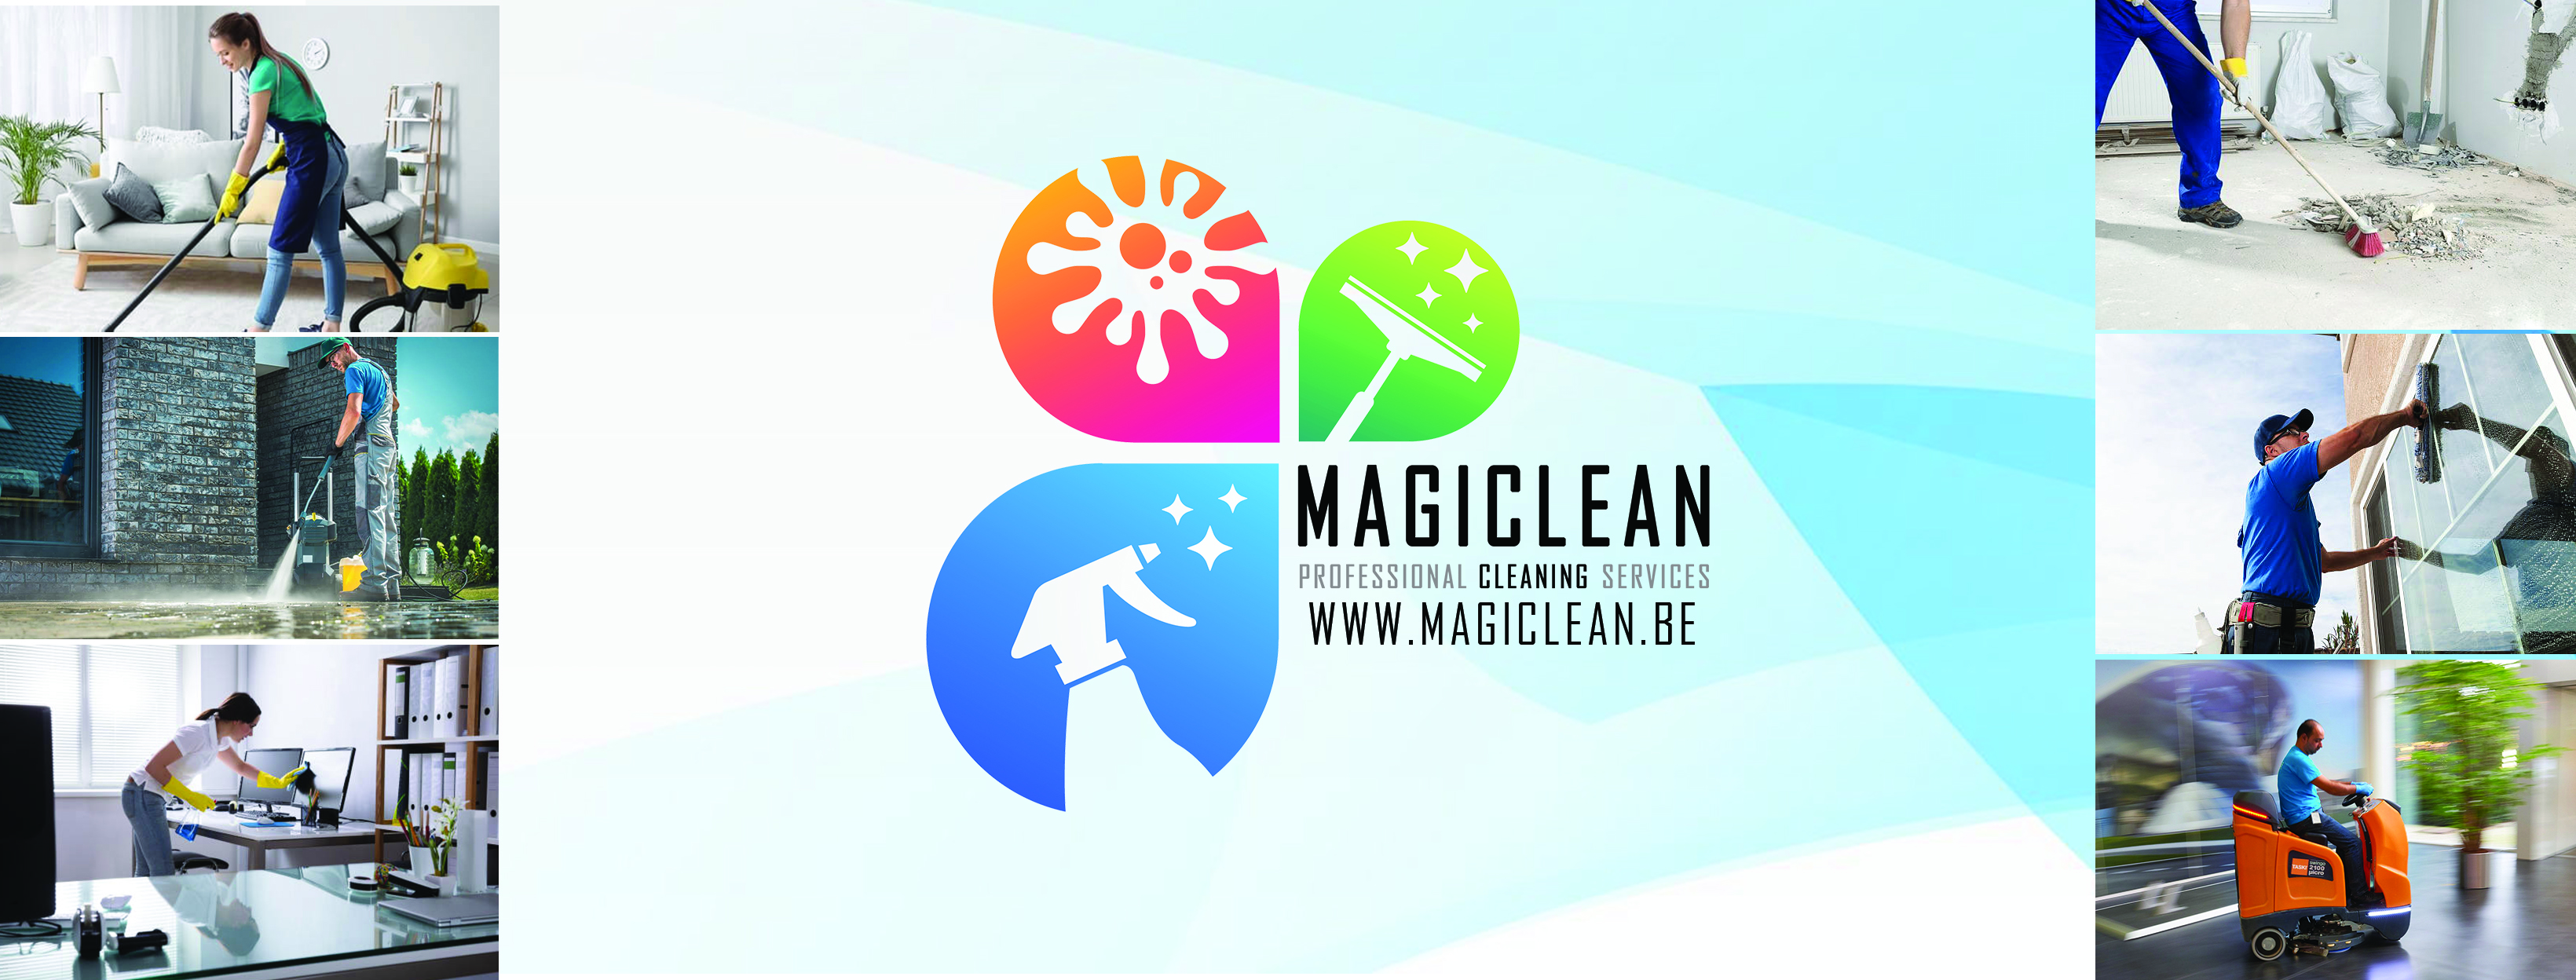 schoonmaakbedrijven Mechelen Magiclean - Professional Cleaning Services